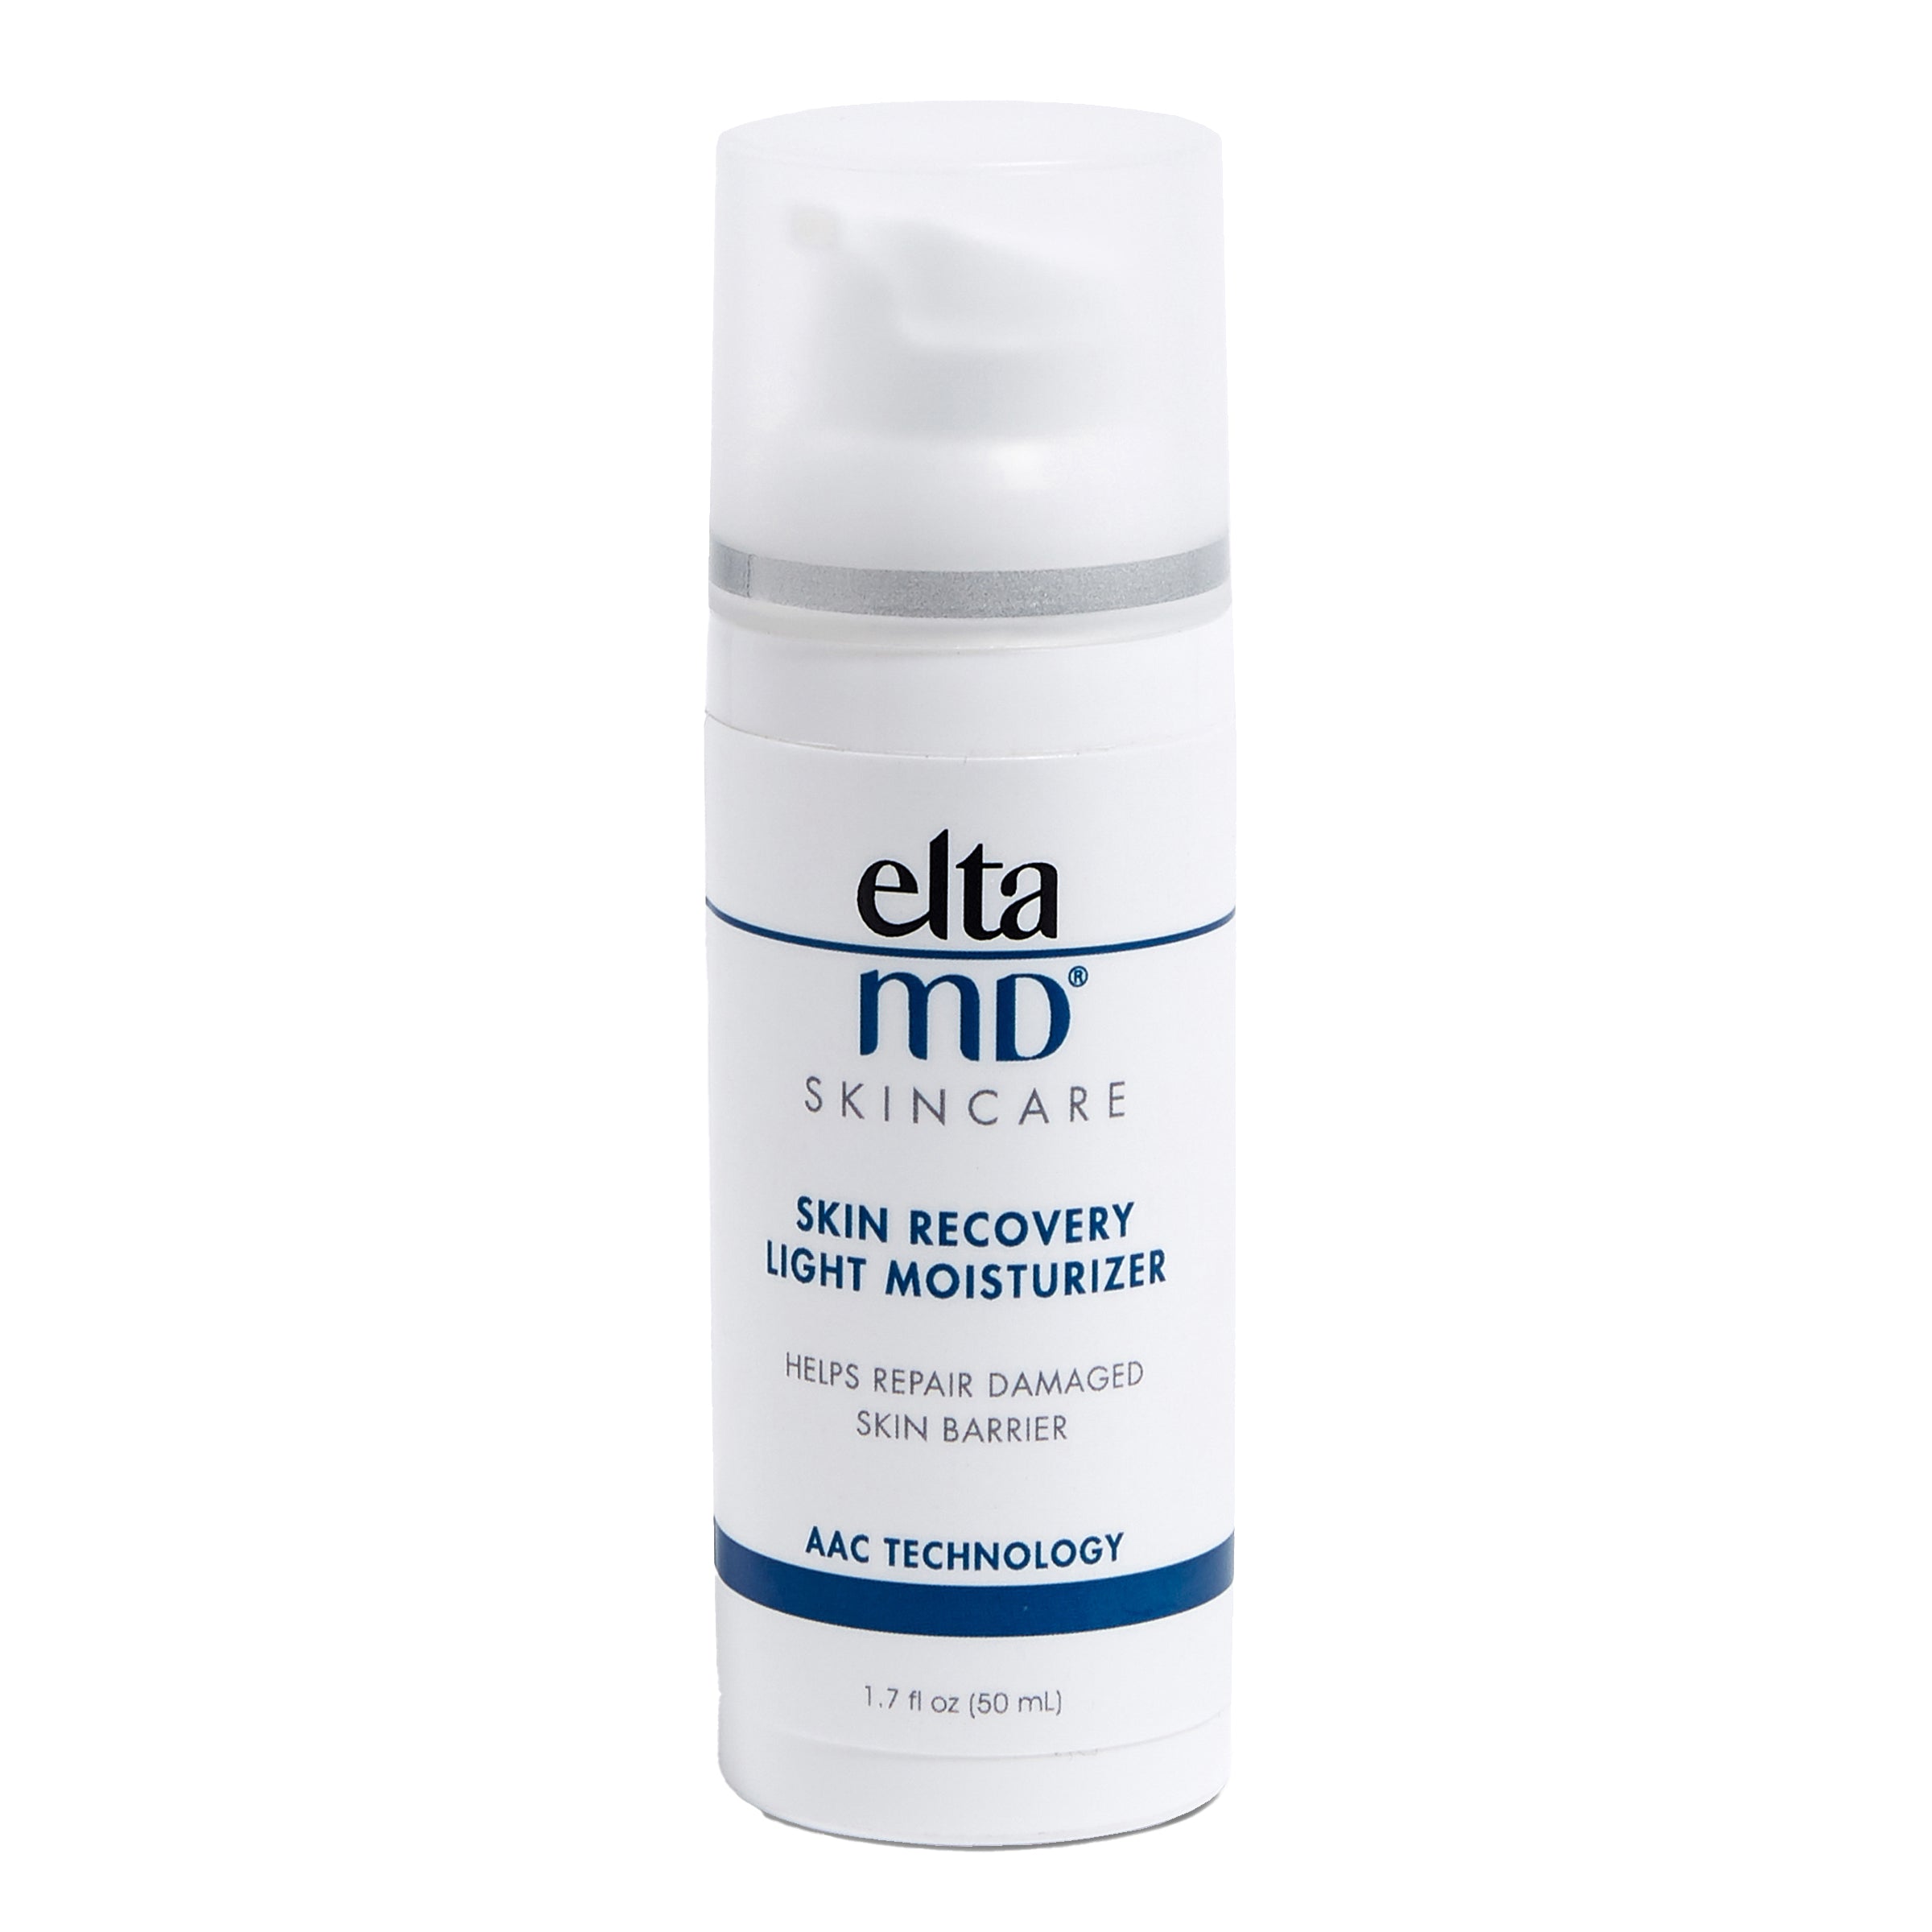 EltaMD lagana hidratantna krema za oporavak kože (1.7 oz)